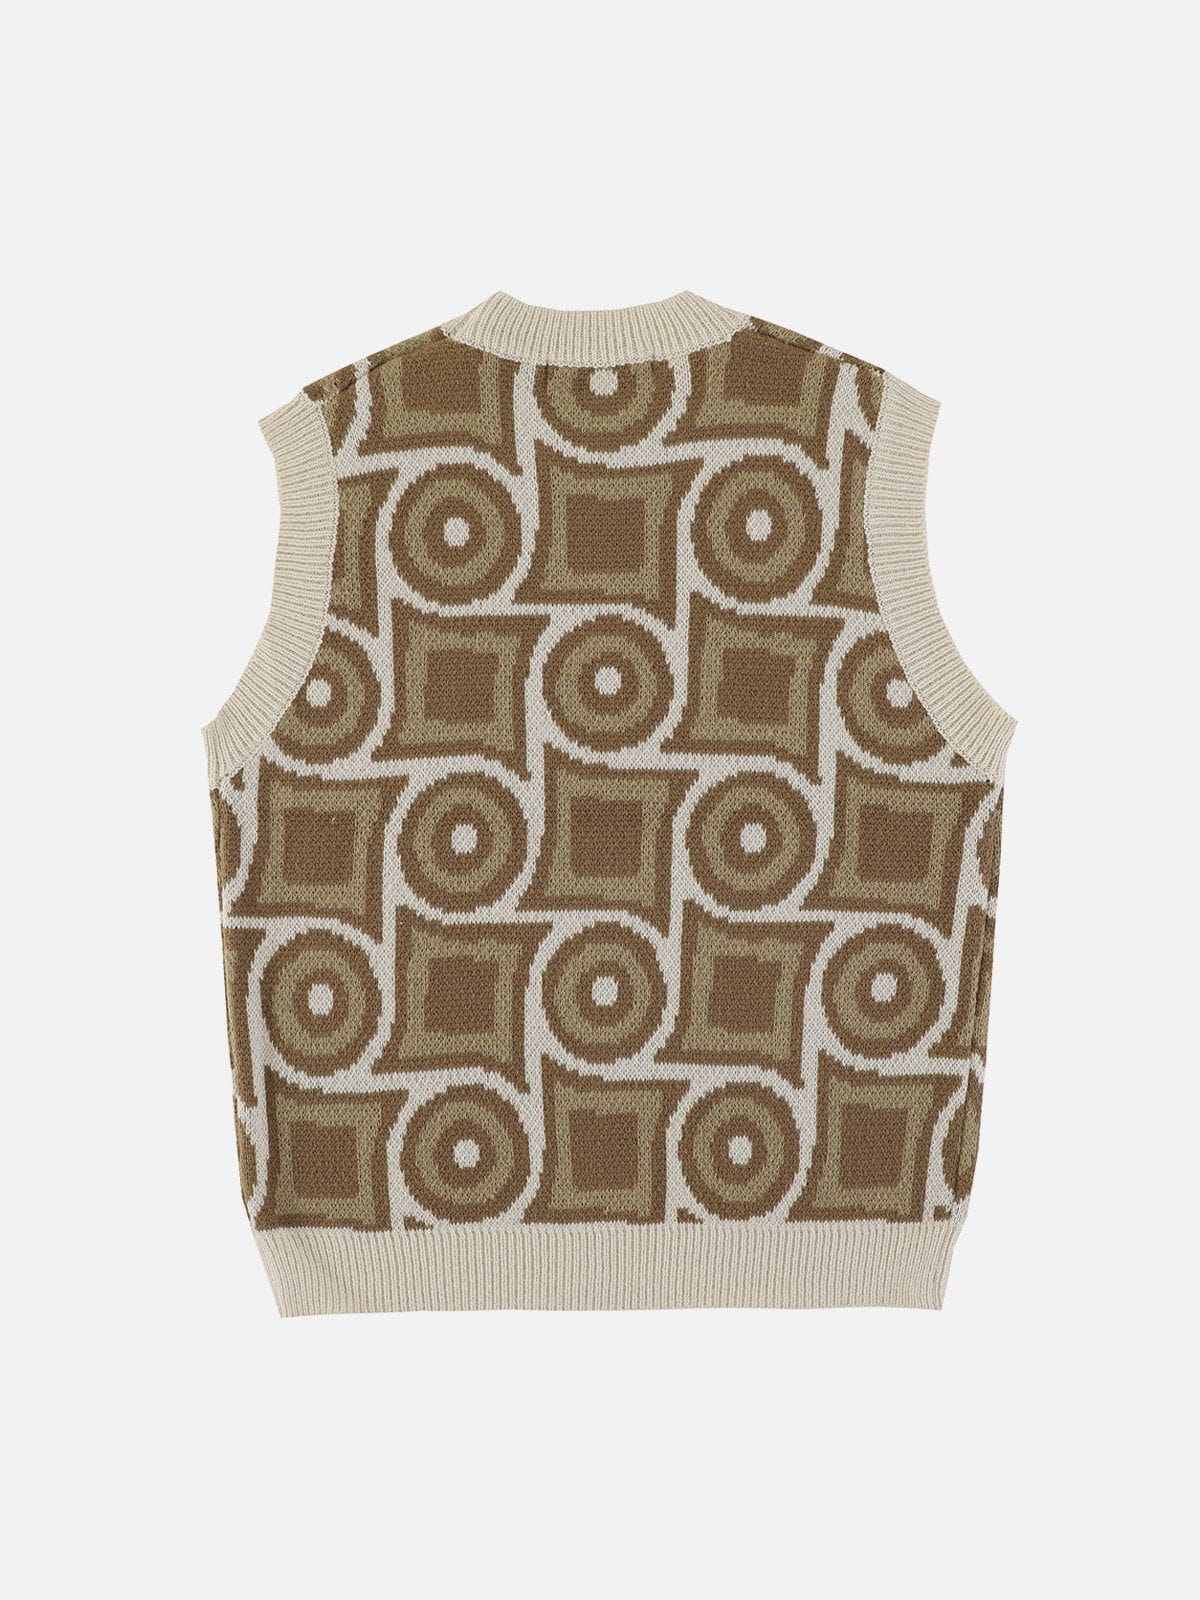 Eprezzy® - Geometric Embroidery Sweater Vest Streetwear Fashion - eprezzy.com